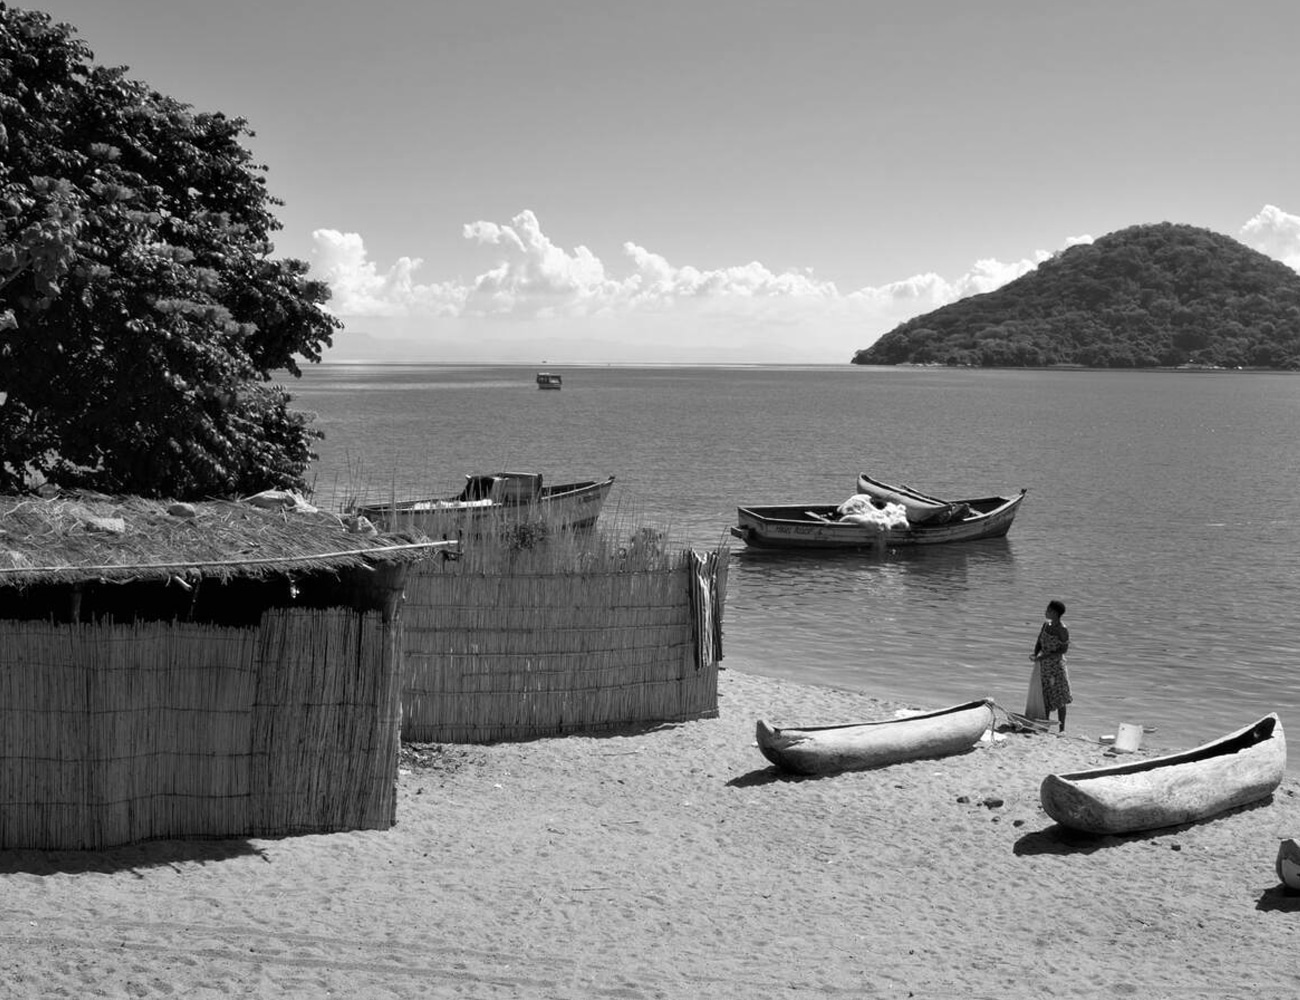 The Beautiful Lake Malawi